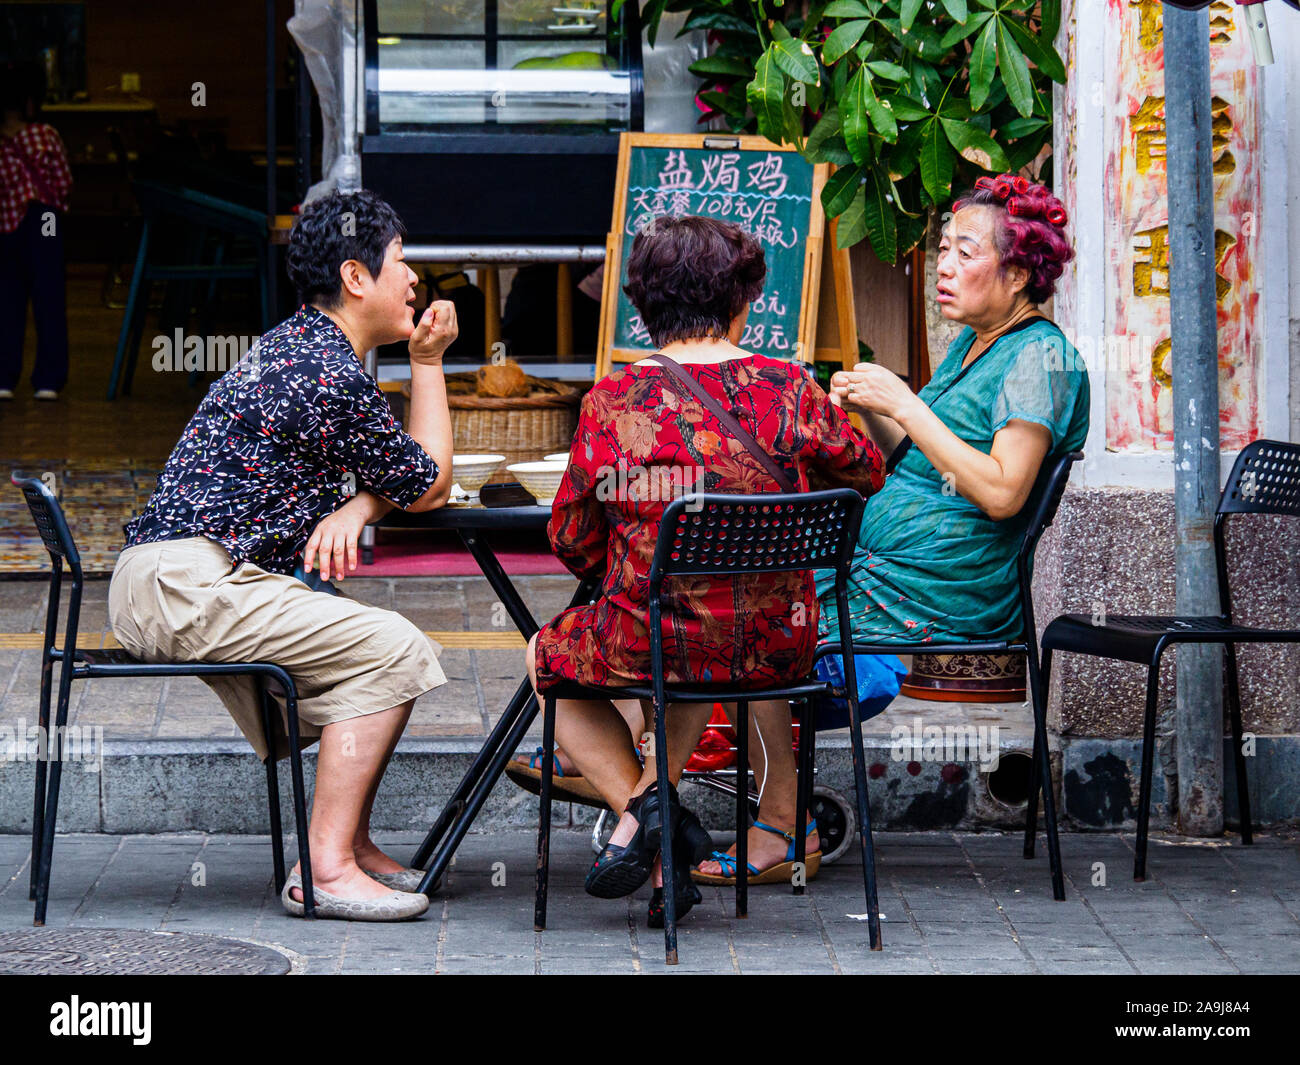 HAIKOU, HAINAN, CHINA - 2 Mar 2019 - im Mittleren alter chinesischer Frauen in ein Cafe zu sozialisieren. China hat eine rasch alternde Bevölkerung. Stockfoto